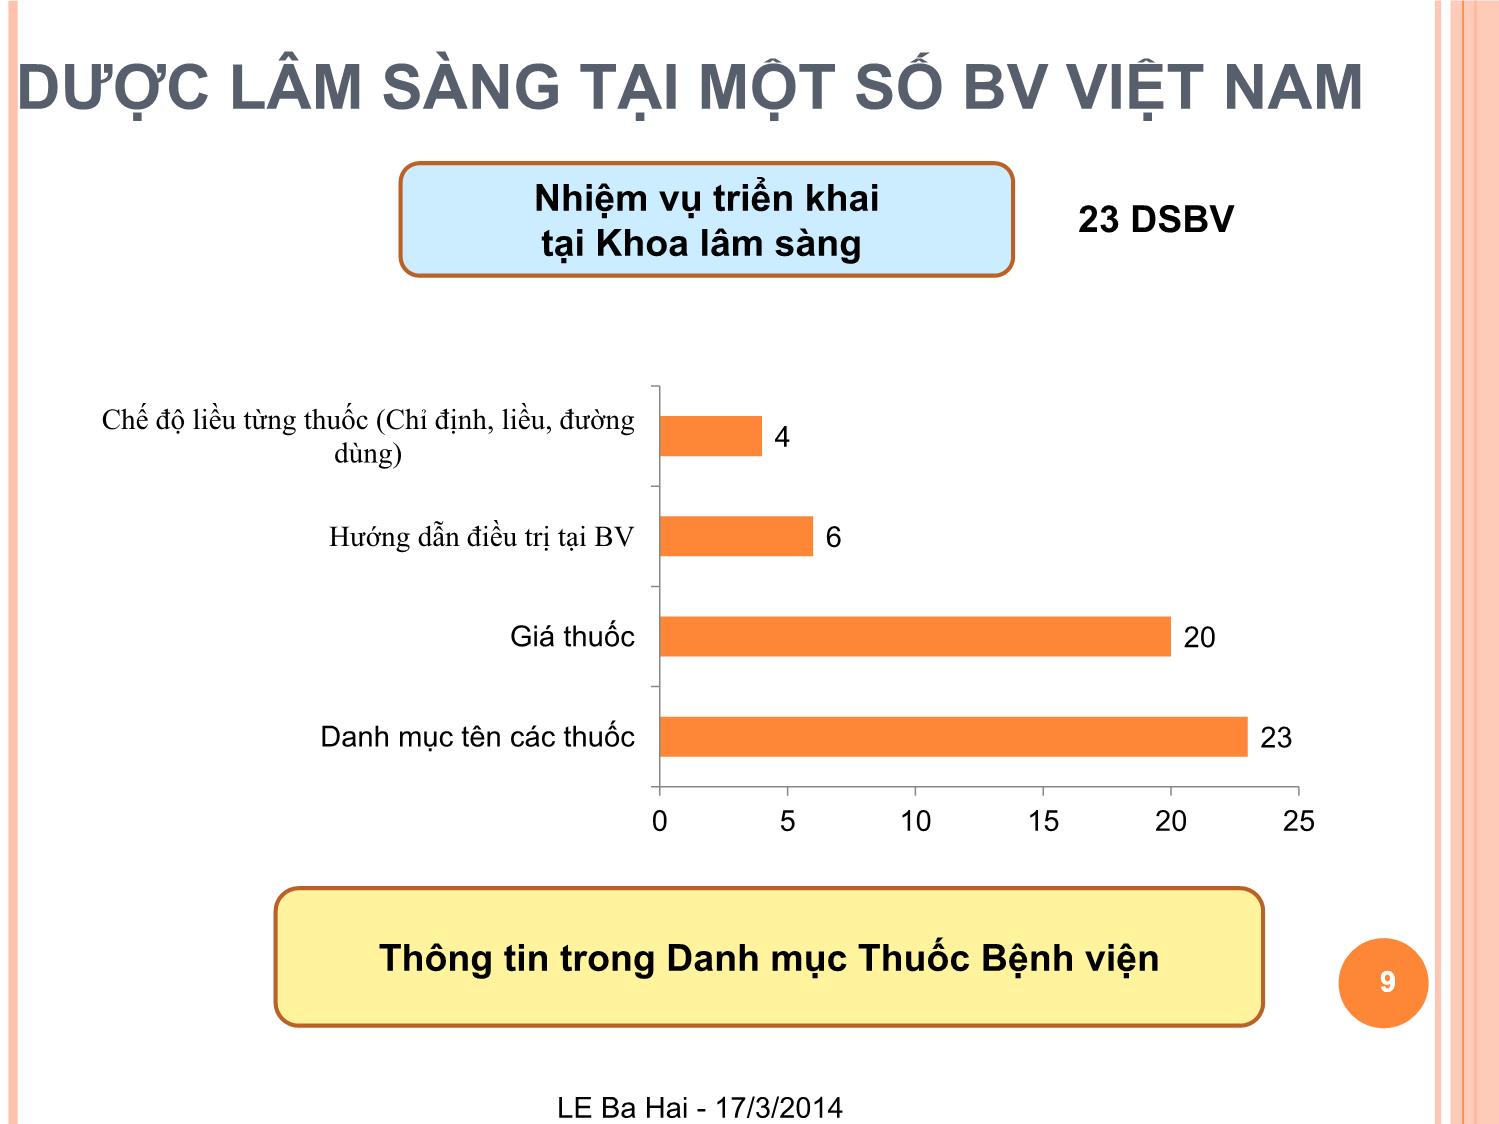 Dược lâm sàng tại bệnh viện Việt Nam: Khảo sát về những dịch vụ đang được triển khai của dược lâm sàng và cơ hội phát triển trang 9